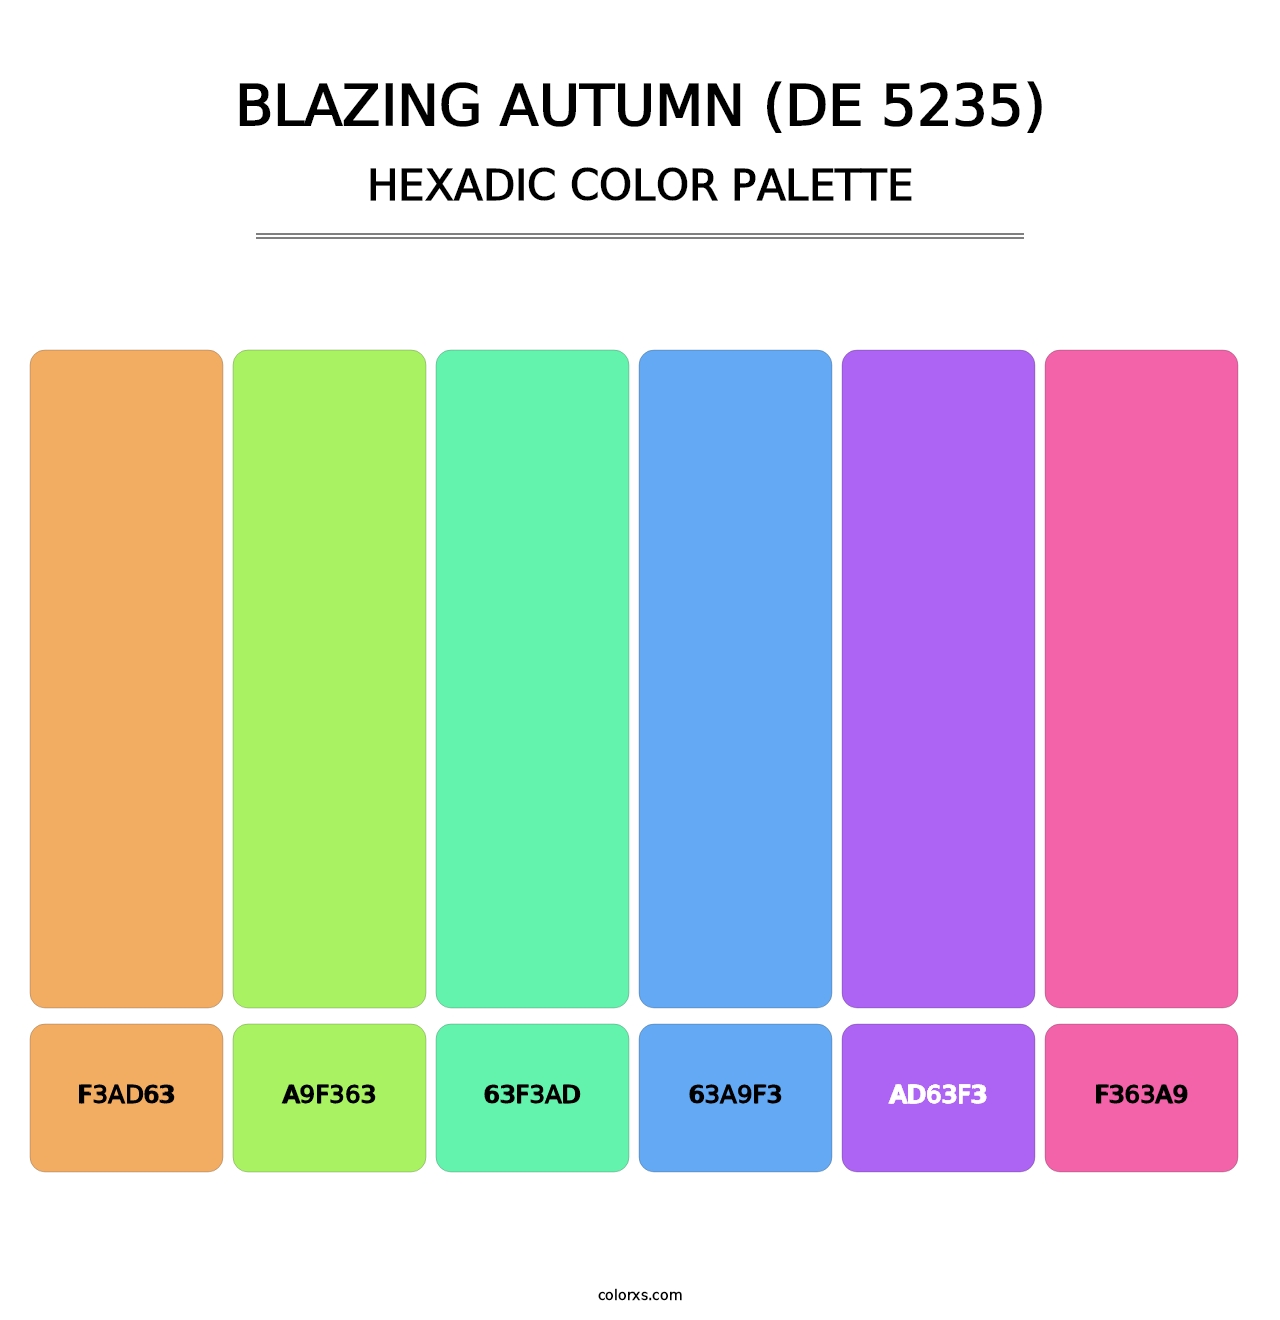 Blazing Autumn (DE 5235) - Hexadic Color Palette